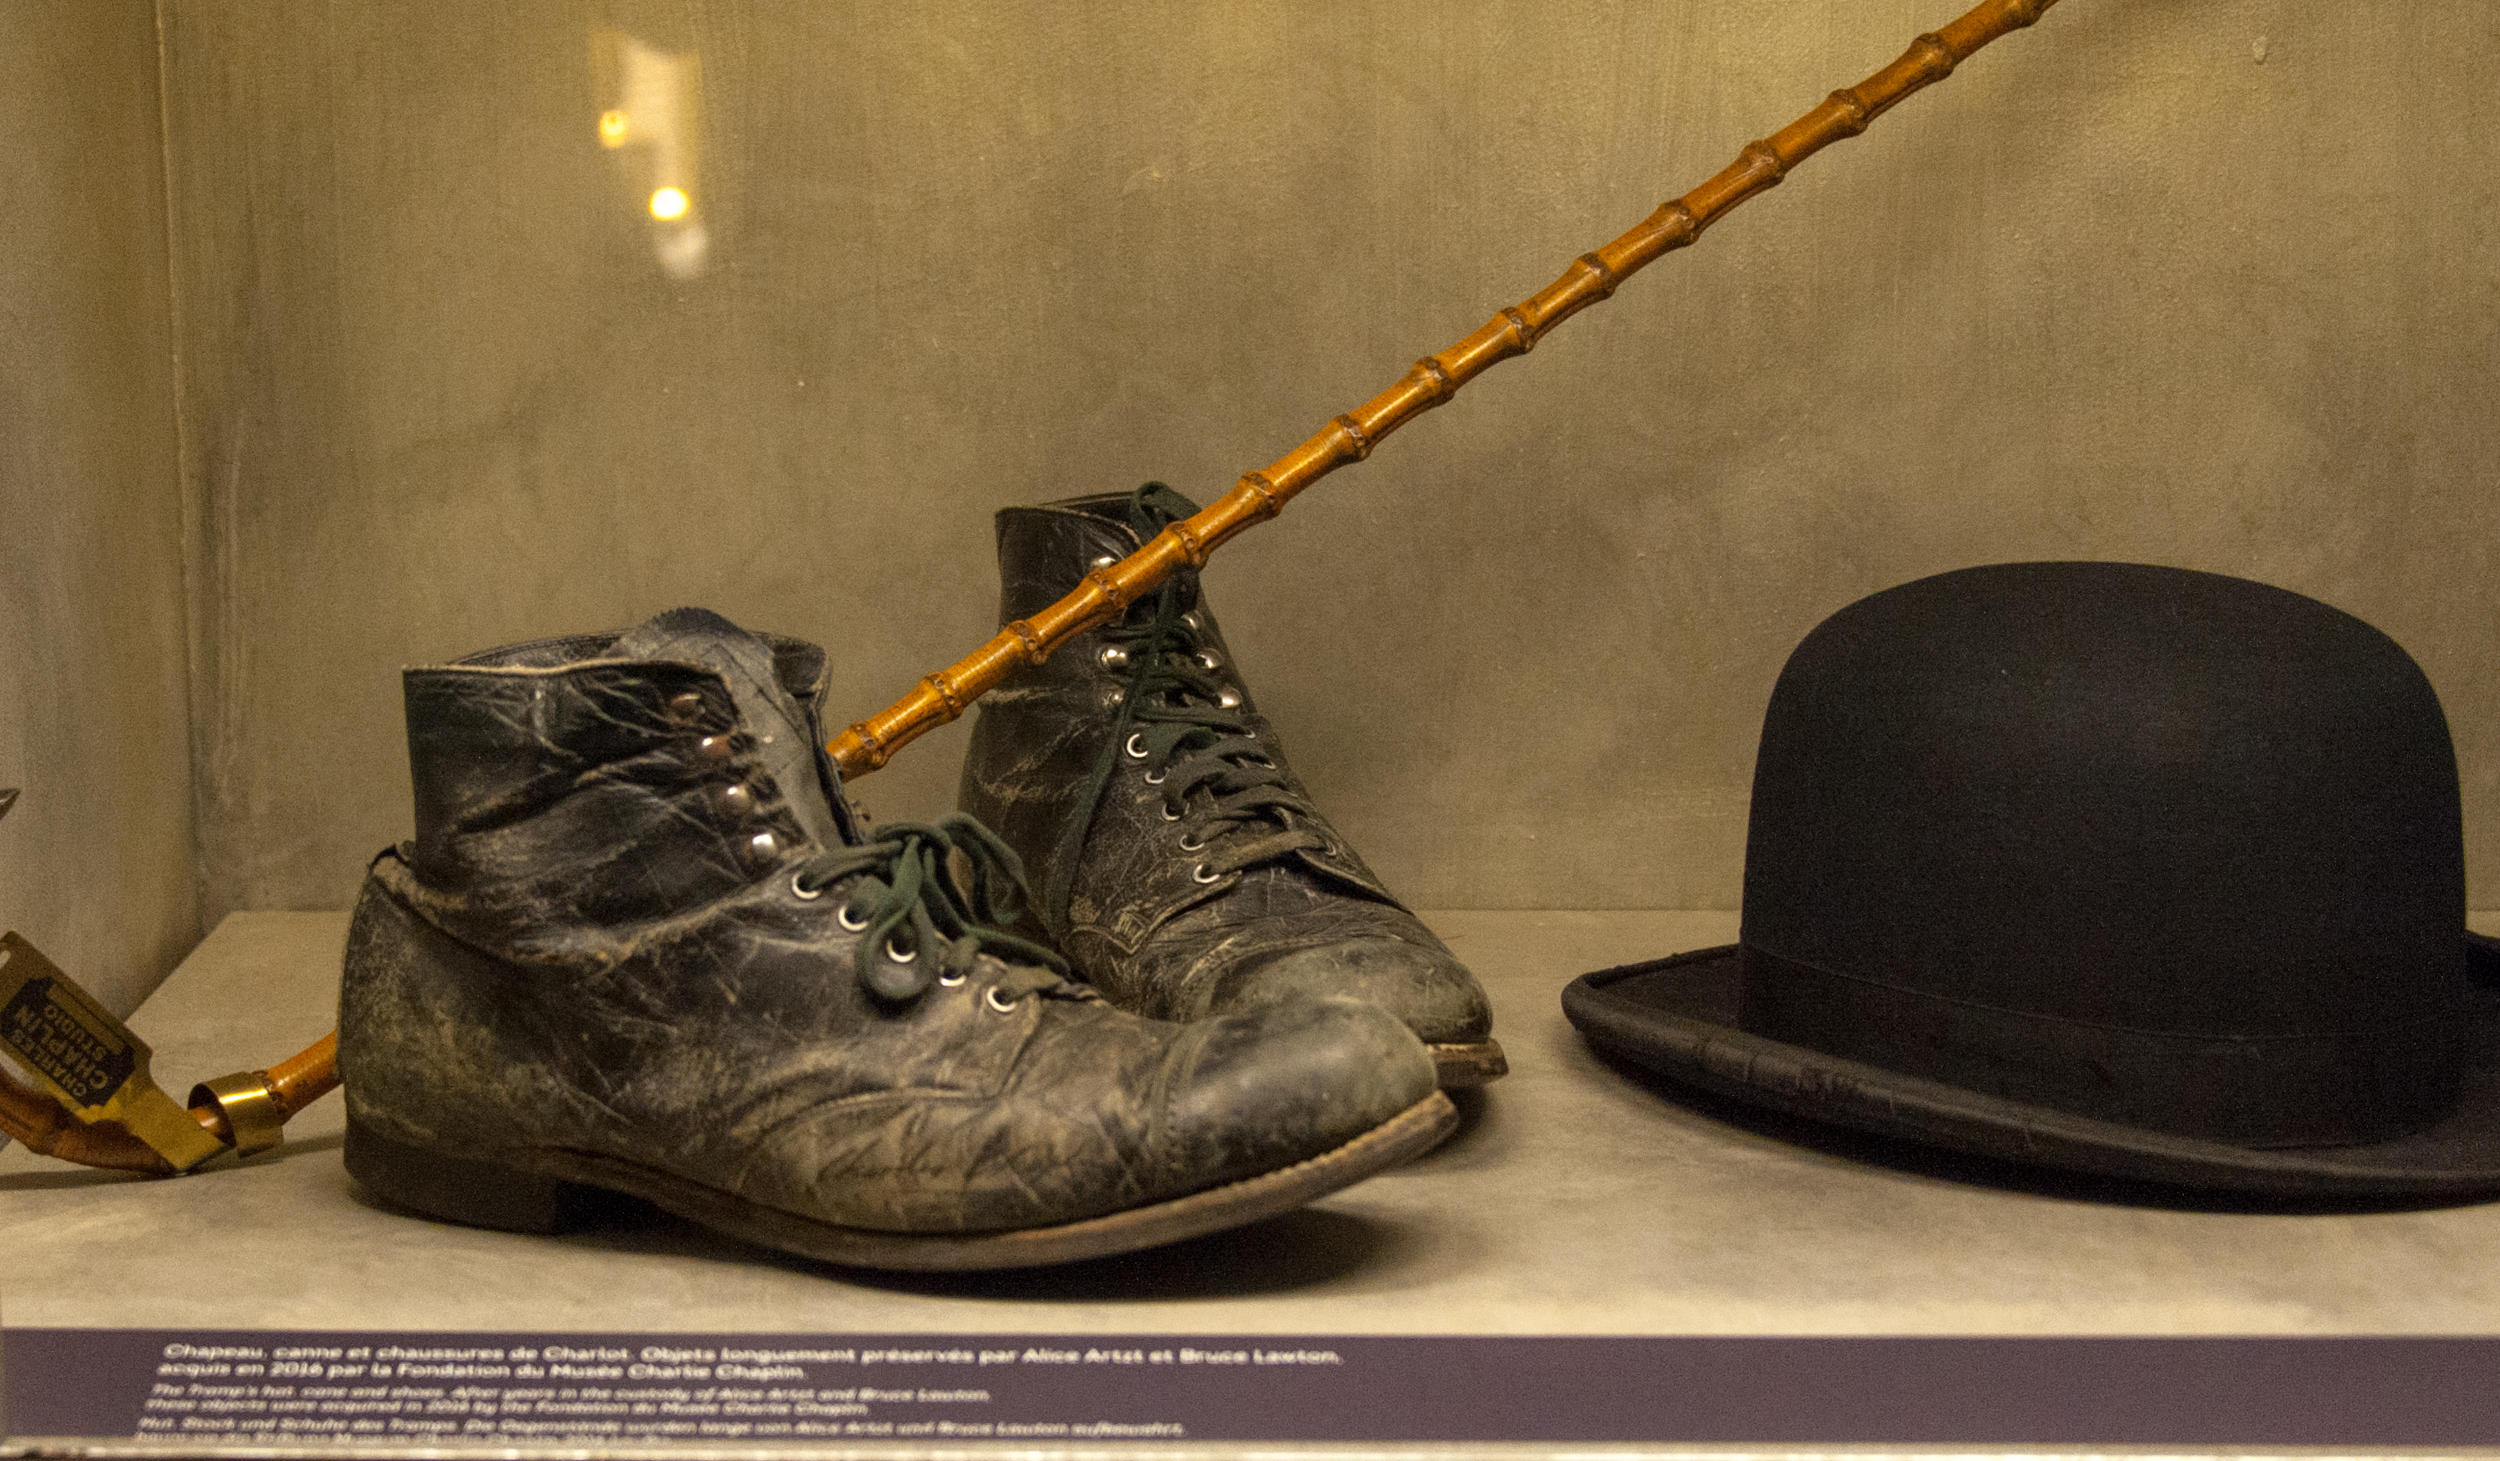 特大的皮鞋、圆顶硬礼帽、一根竹拐杖，立刻就能联想起那个典型的卓别林形象。